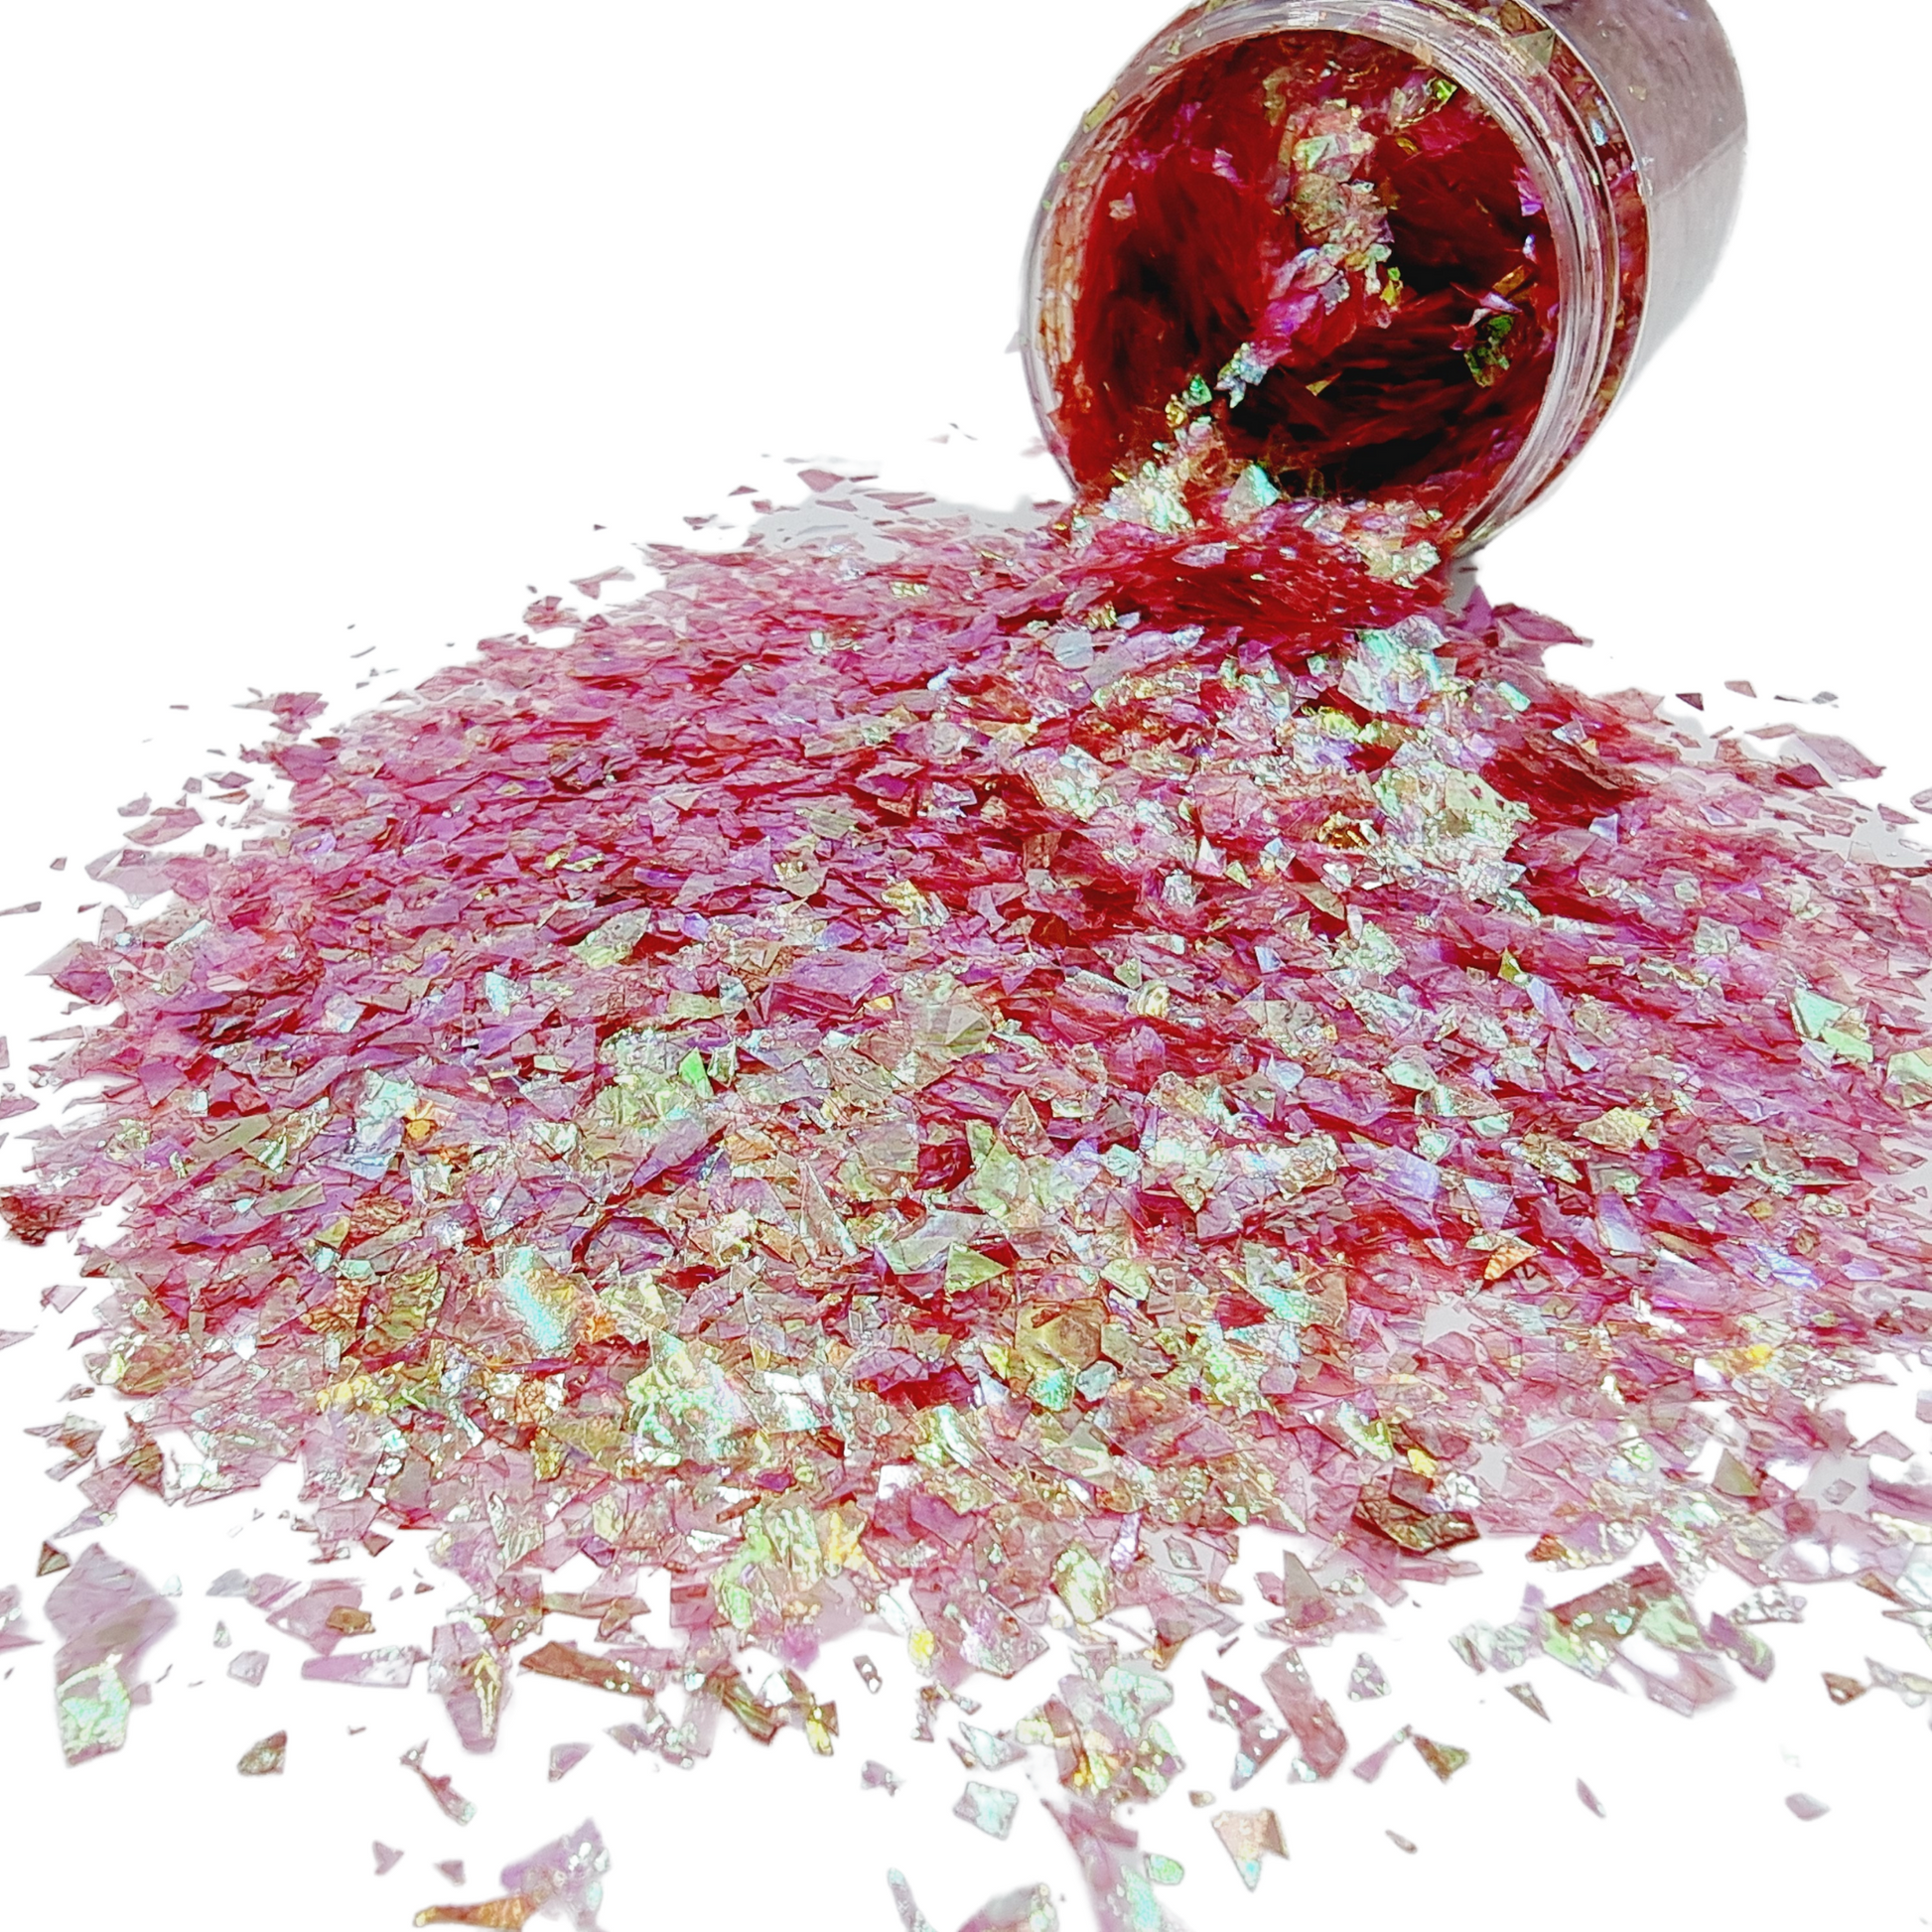 Magic Carpet Ride Red flake glitter